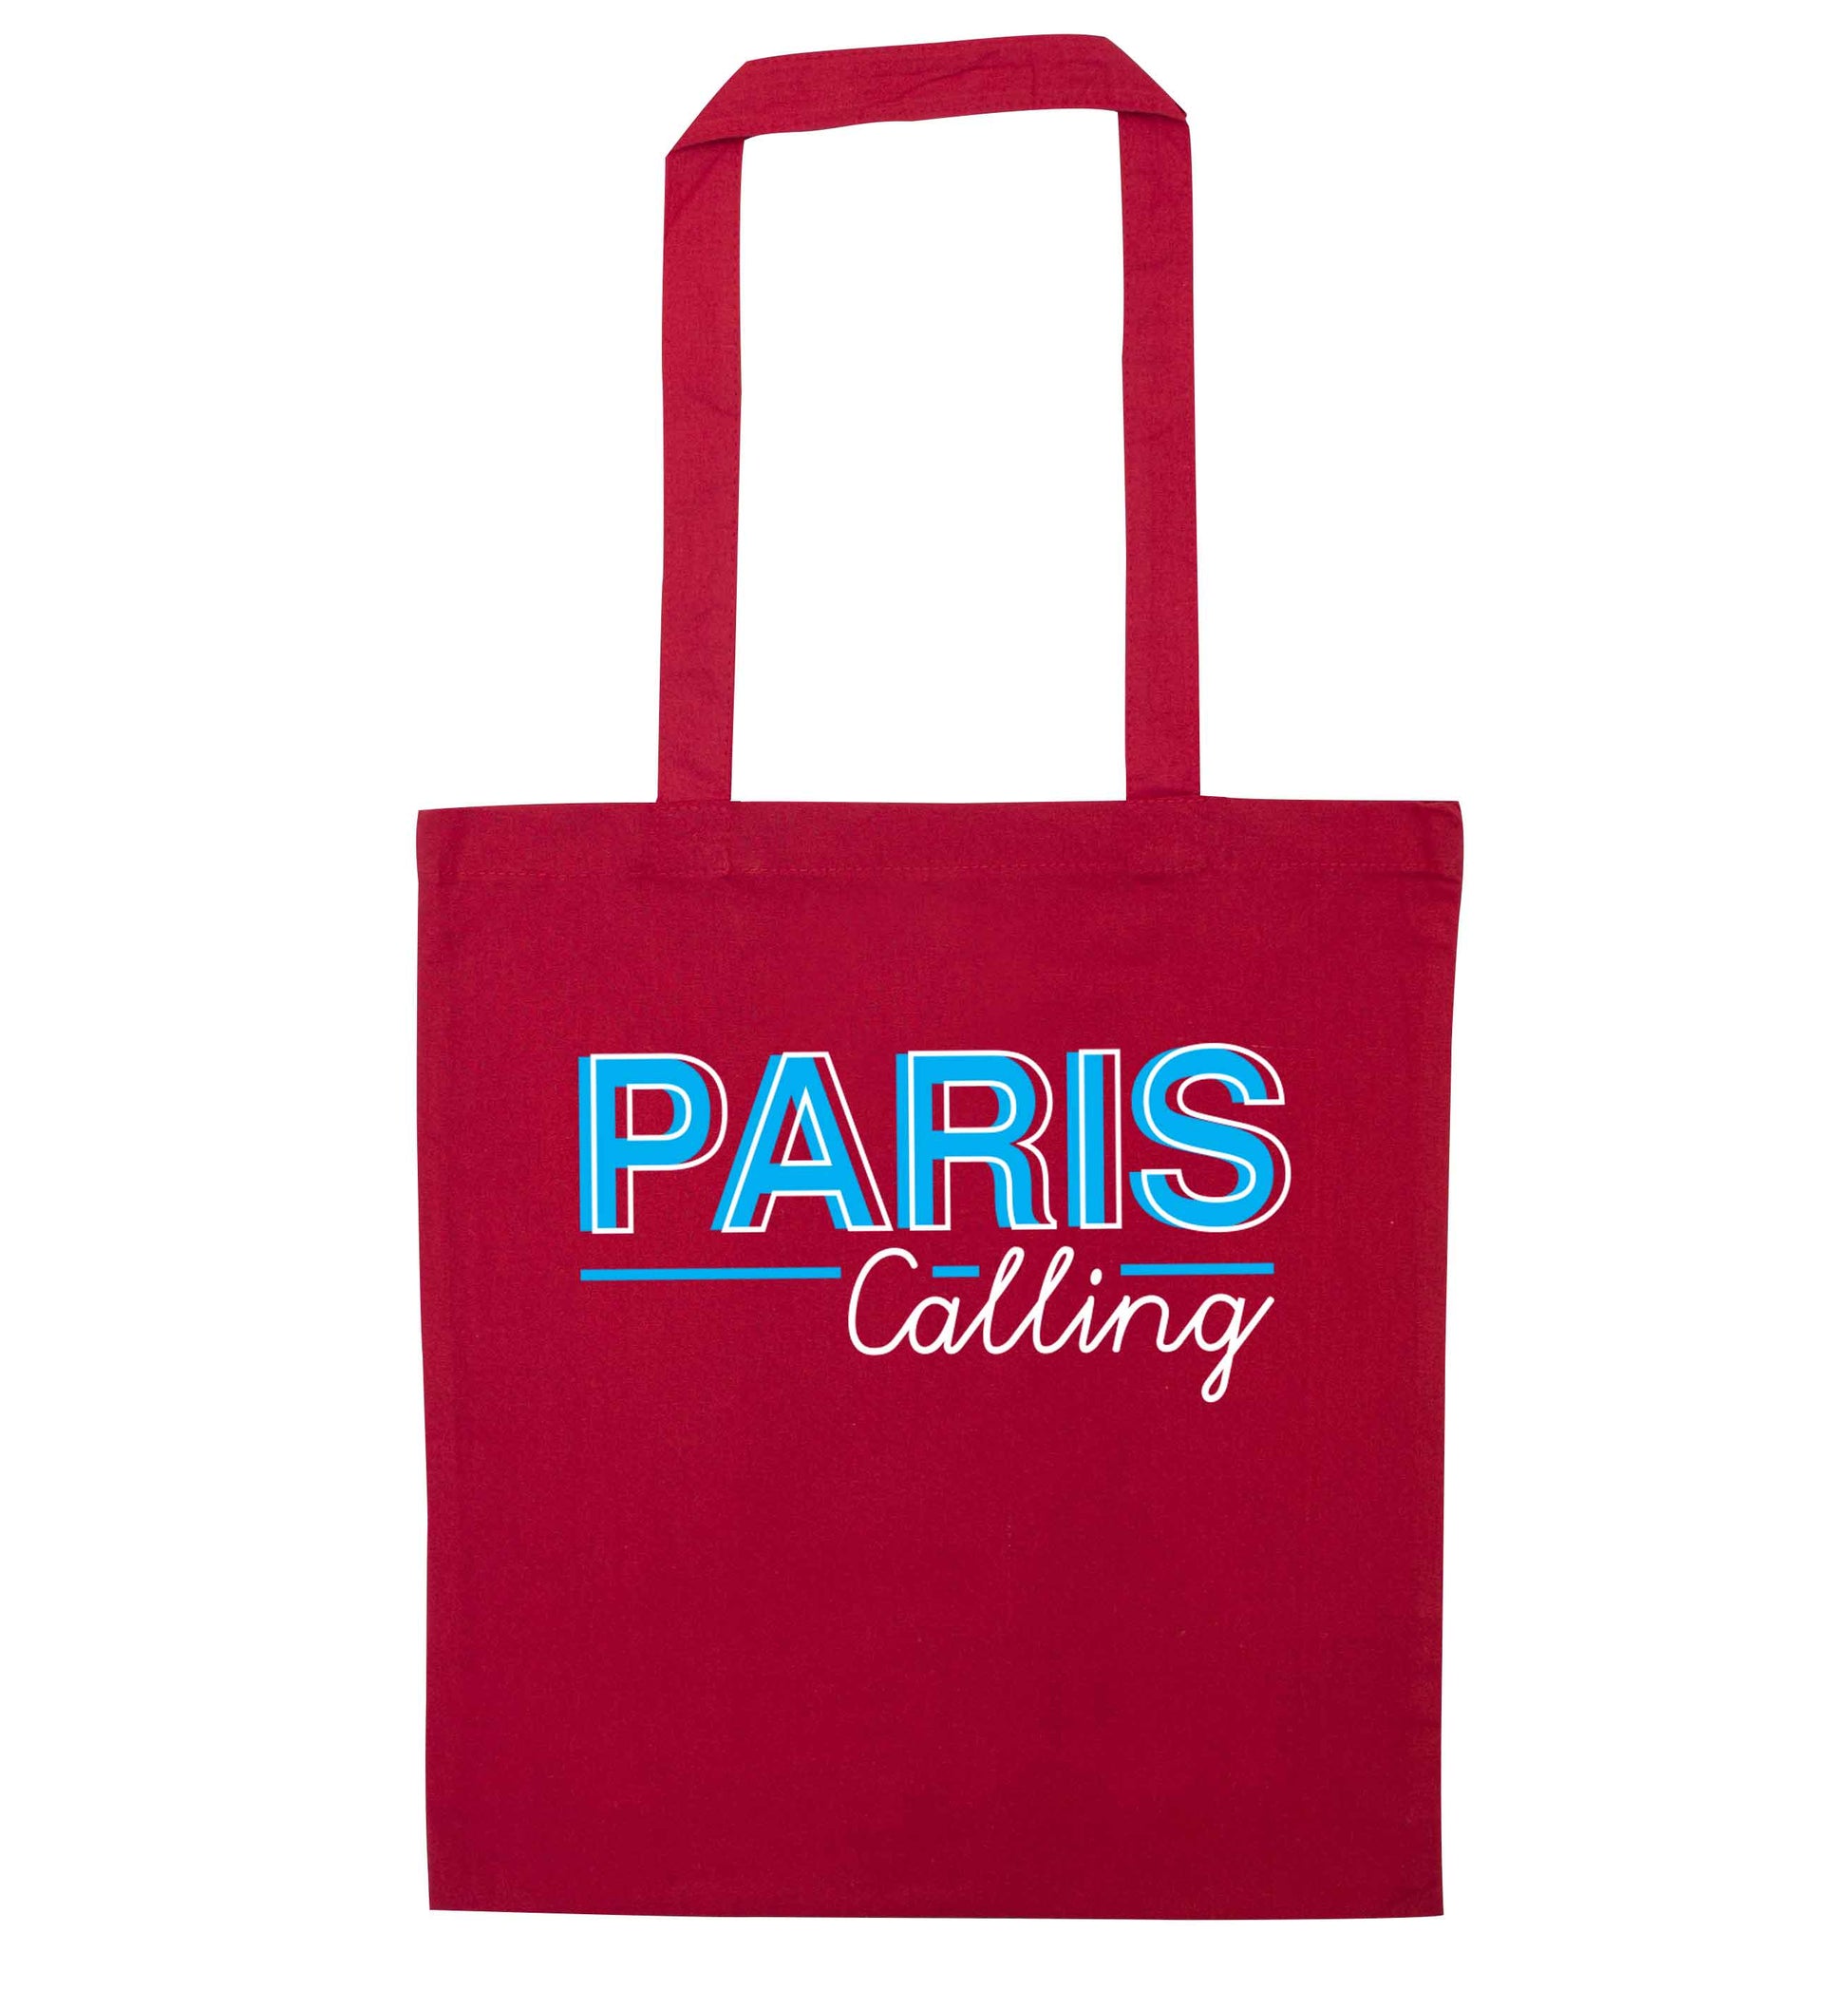 Paris calling red tote bag